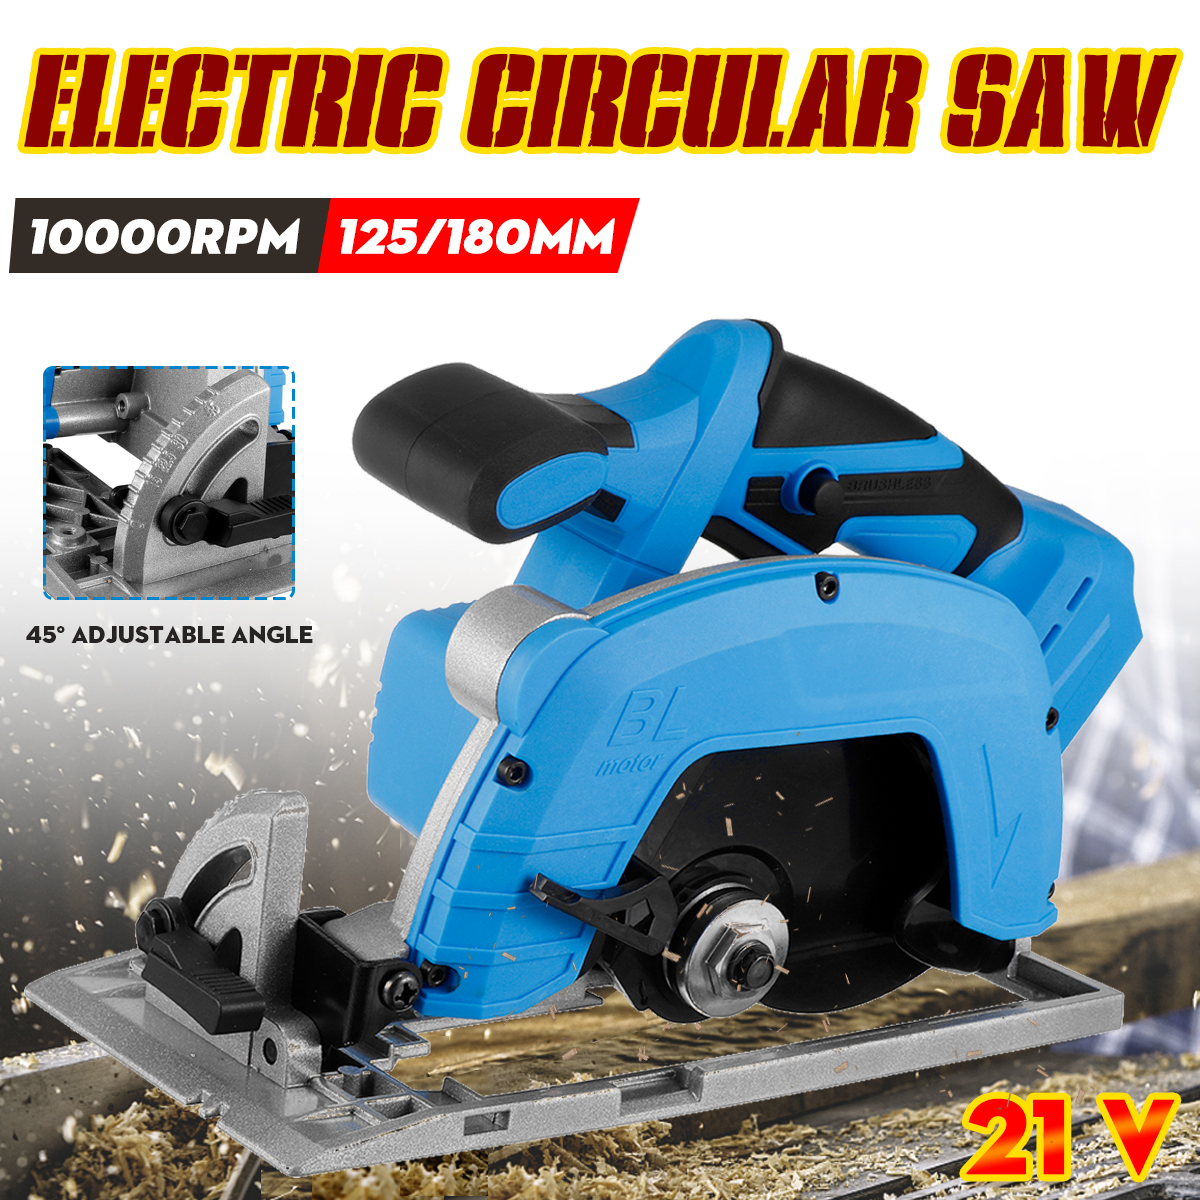 10000RPM-Electric-Circular-Saw-Cutting-Machine-Handle-Power-Work-Heavy-Duty-Wood-Steel-Cutting-Tools-1905402-2